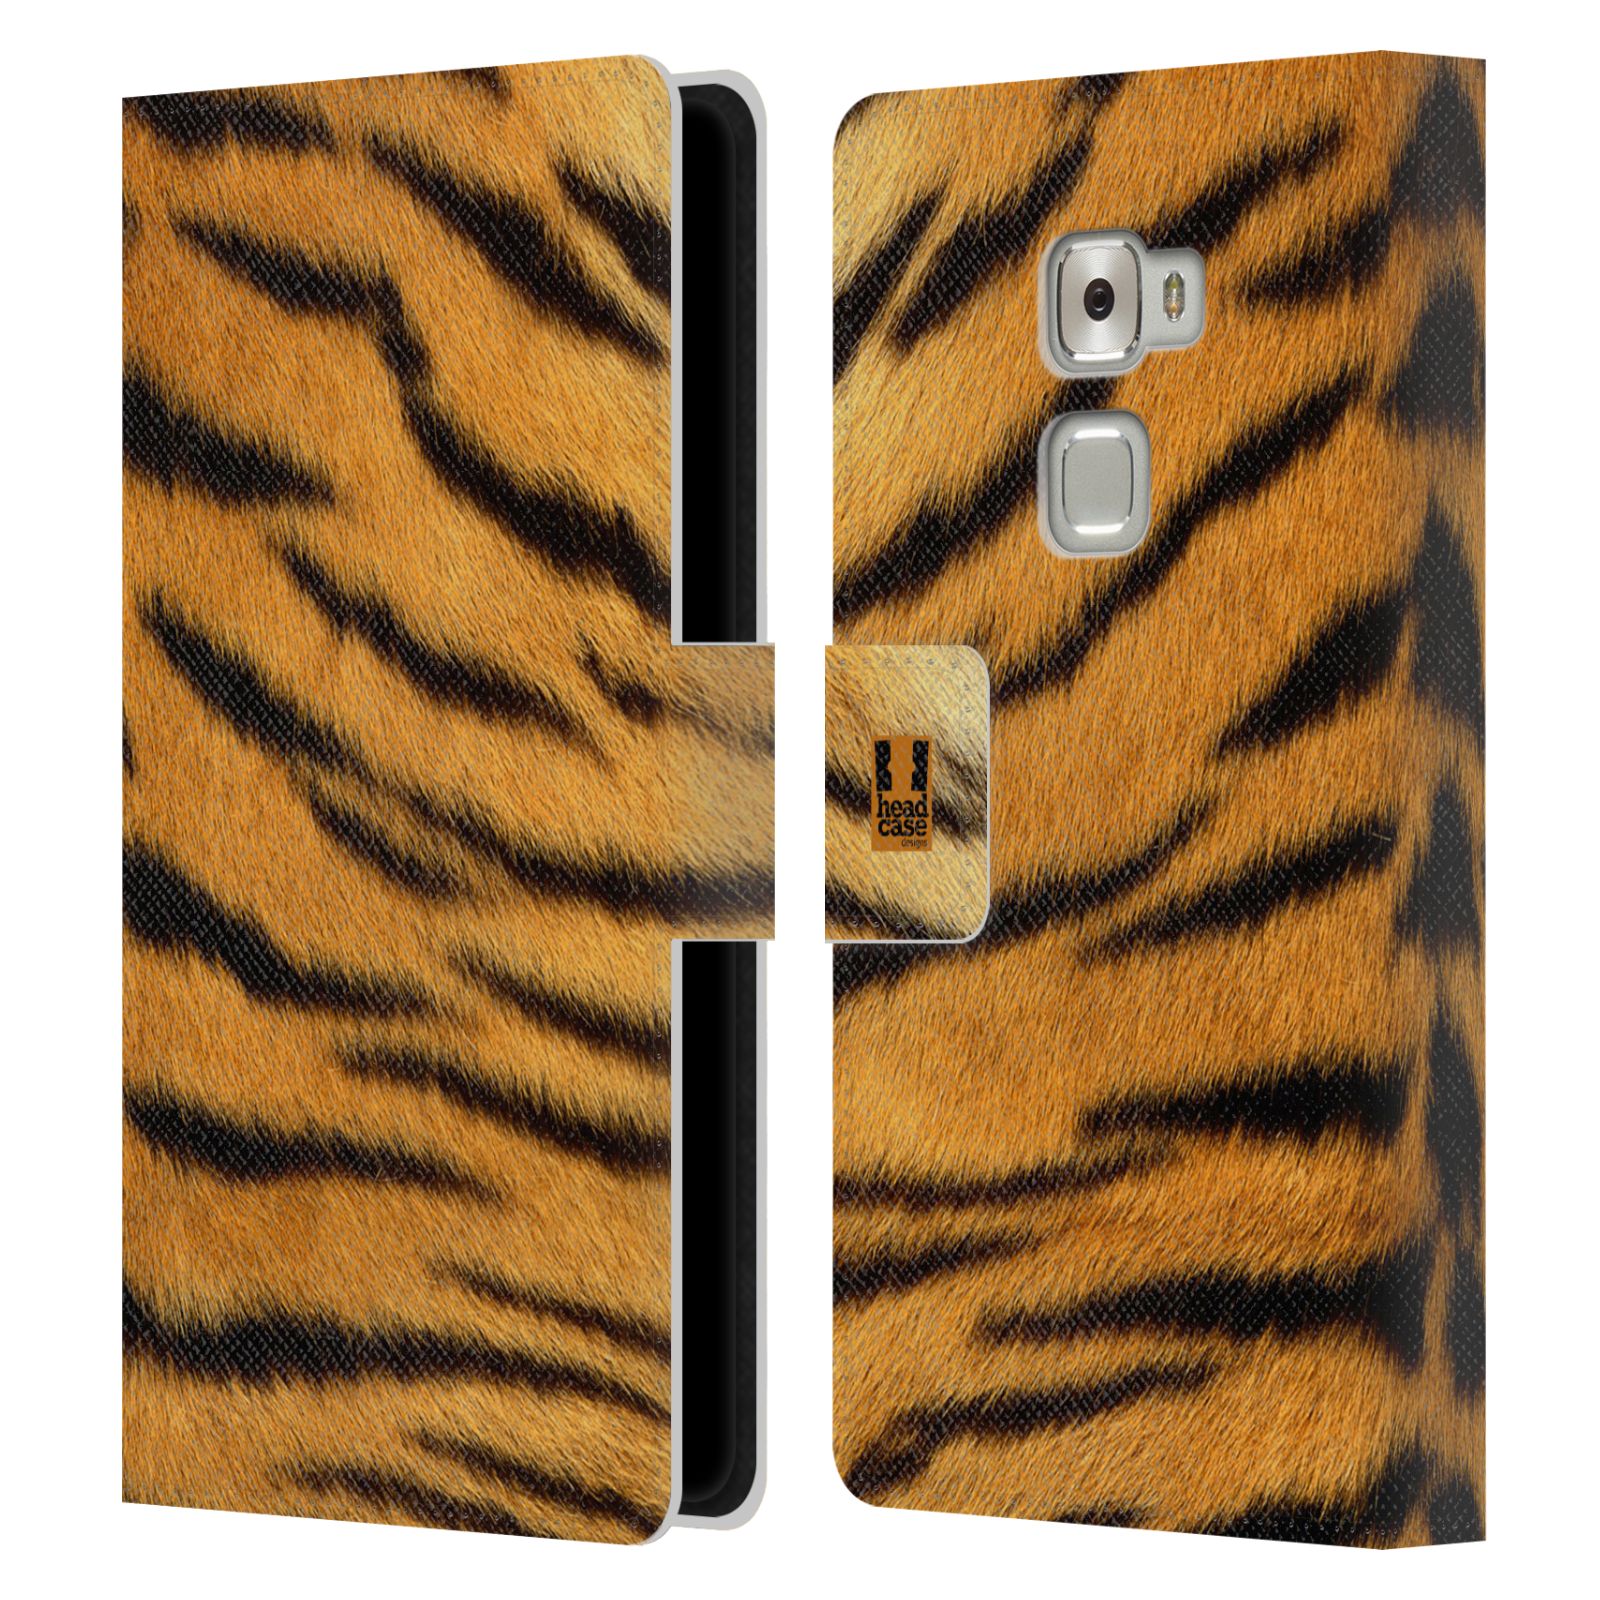 HEAD CASE Flipové pouzdro pro mobil Huawei MATE S zvíře srst divoká kolekce tygr